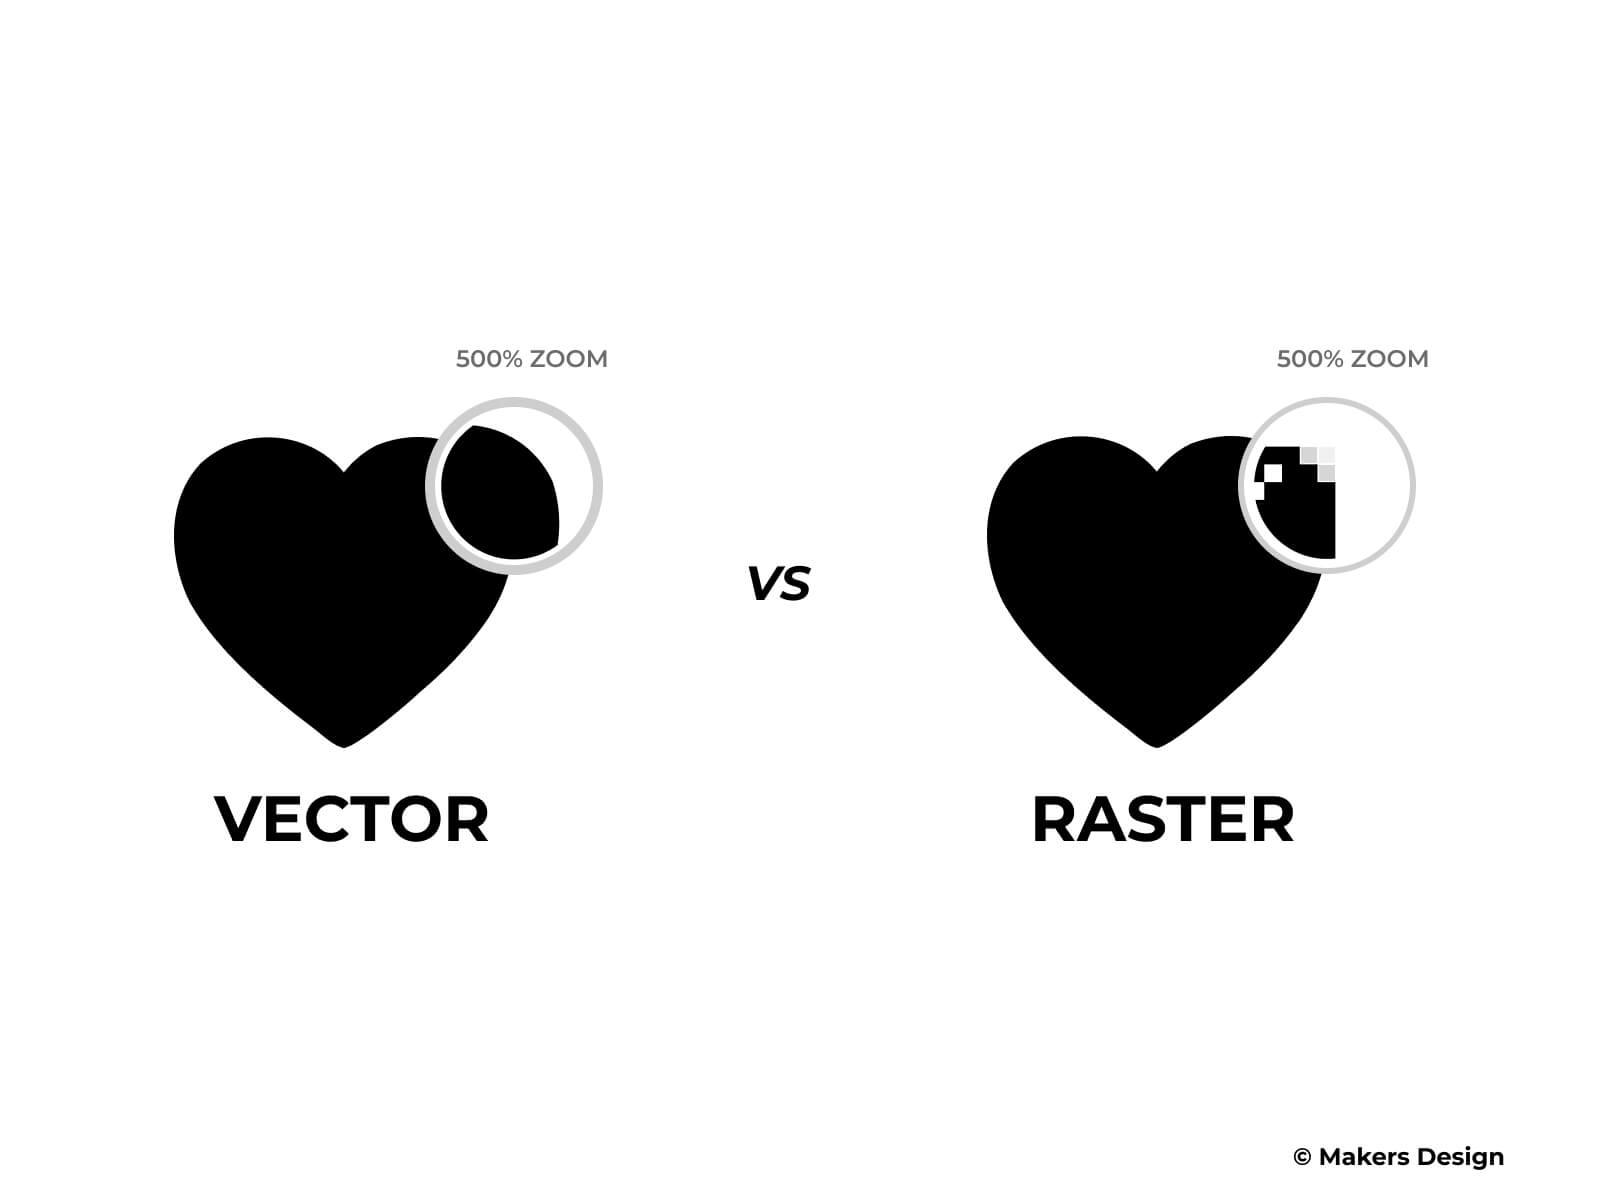 Vector Vs Raster